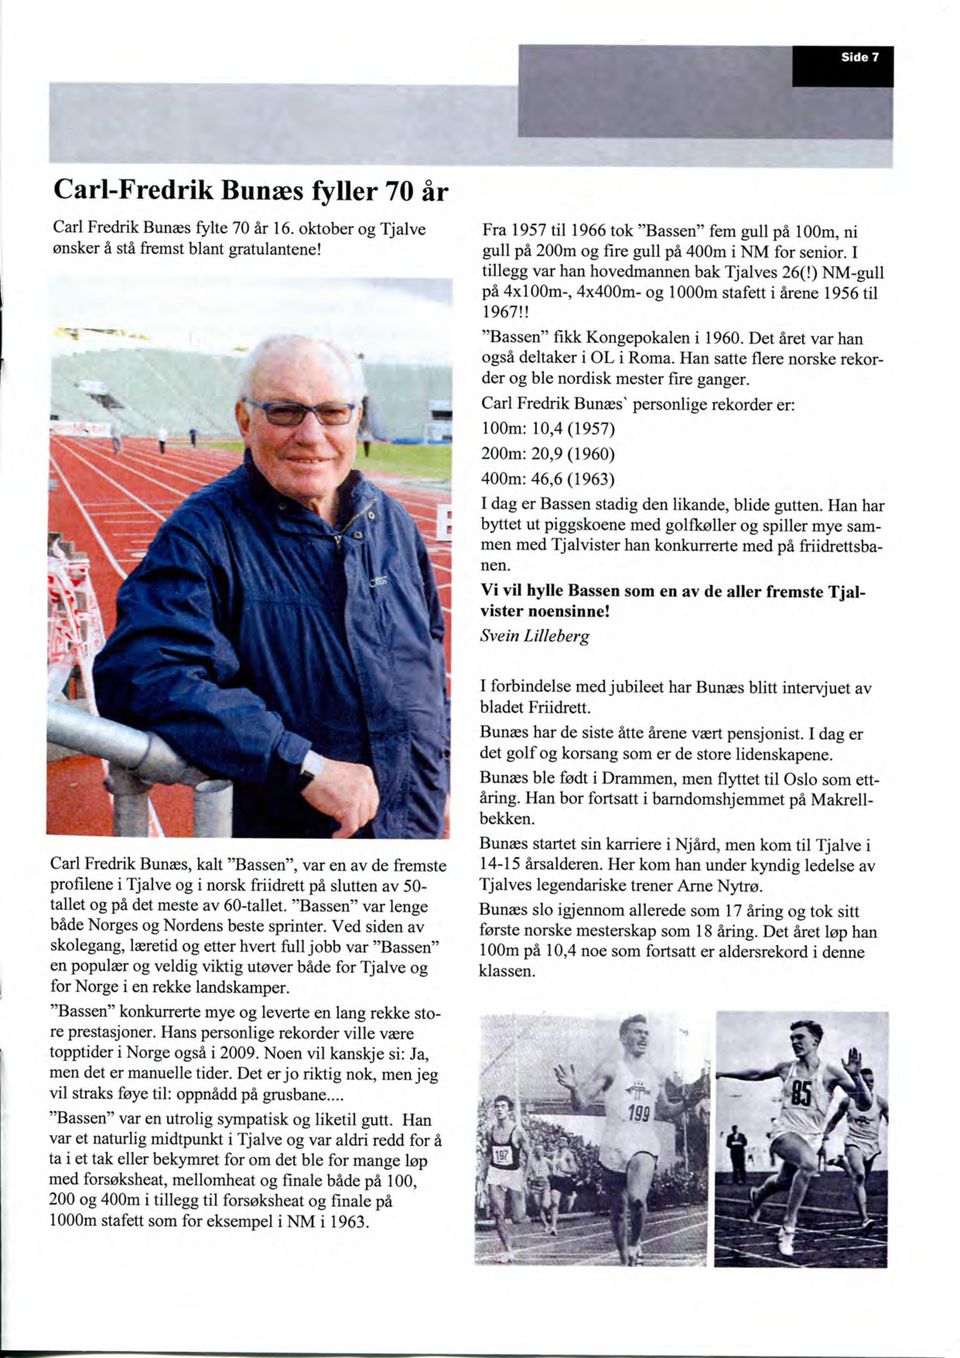 ) NM-gull pa 4x100m-, 4x400m- og 1000m stafett i arene 1956 til 1967!! "Bassen" fikk Kongepokalen i 1960. Det aret var han ogsa deltaker i OL i Roma.